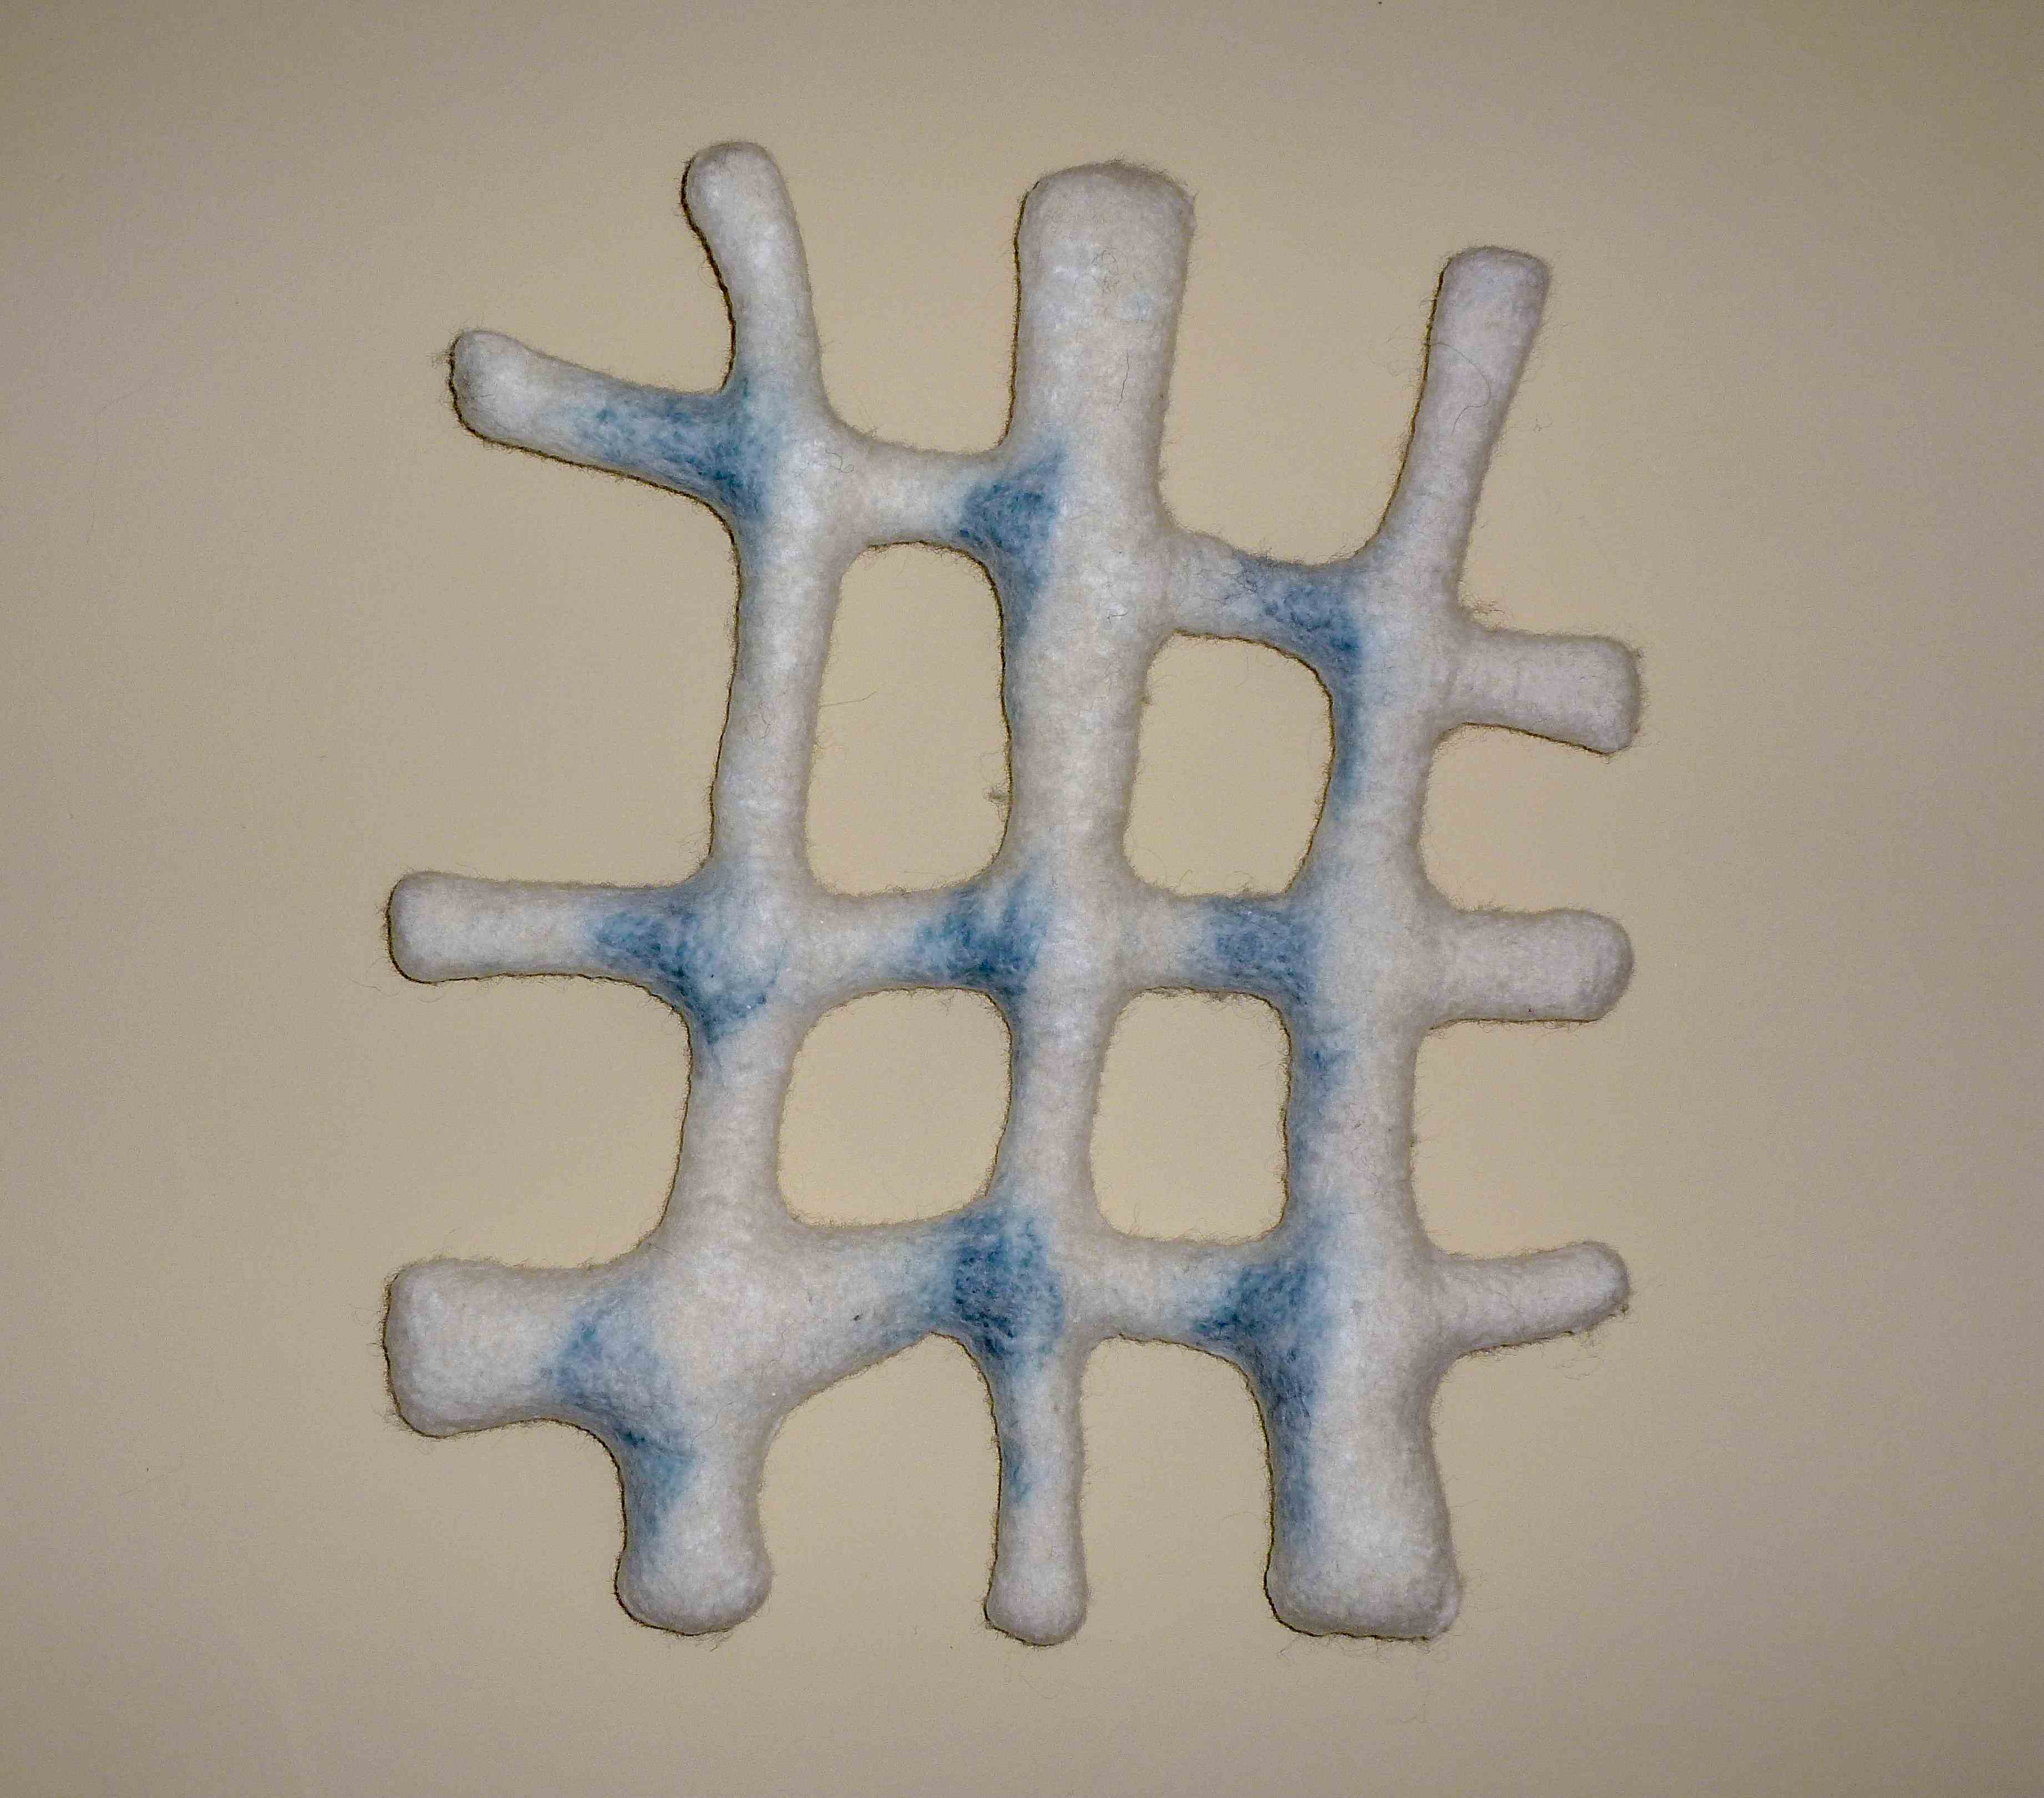 vervilt wol, polystyreen vulling; 52x44x6 cm, textielkunst (2013)